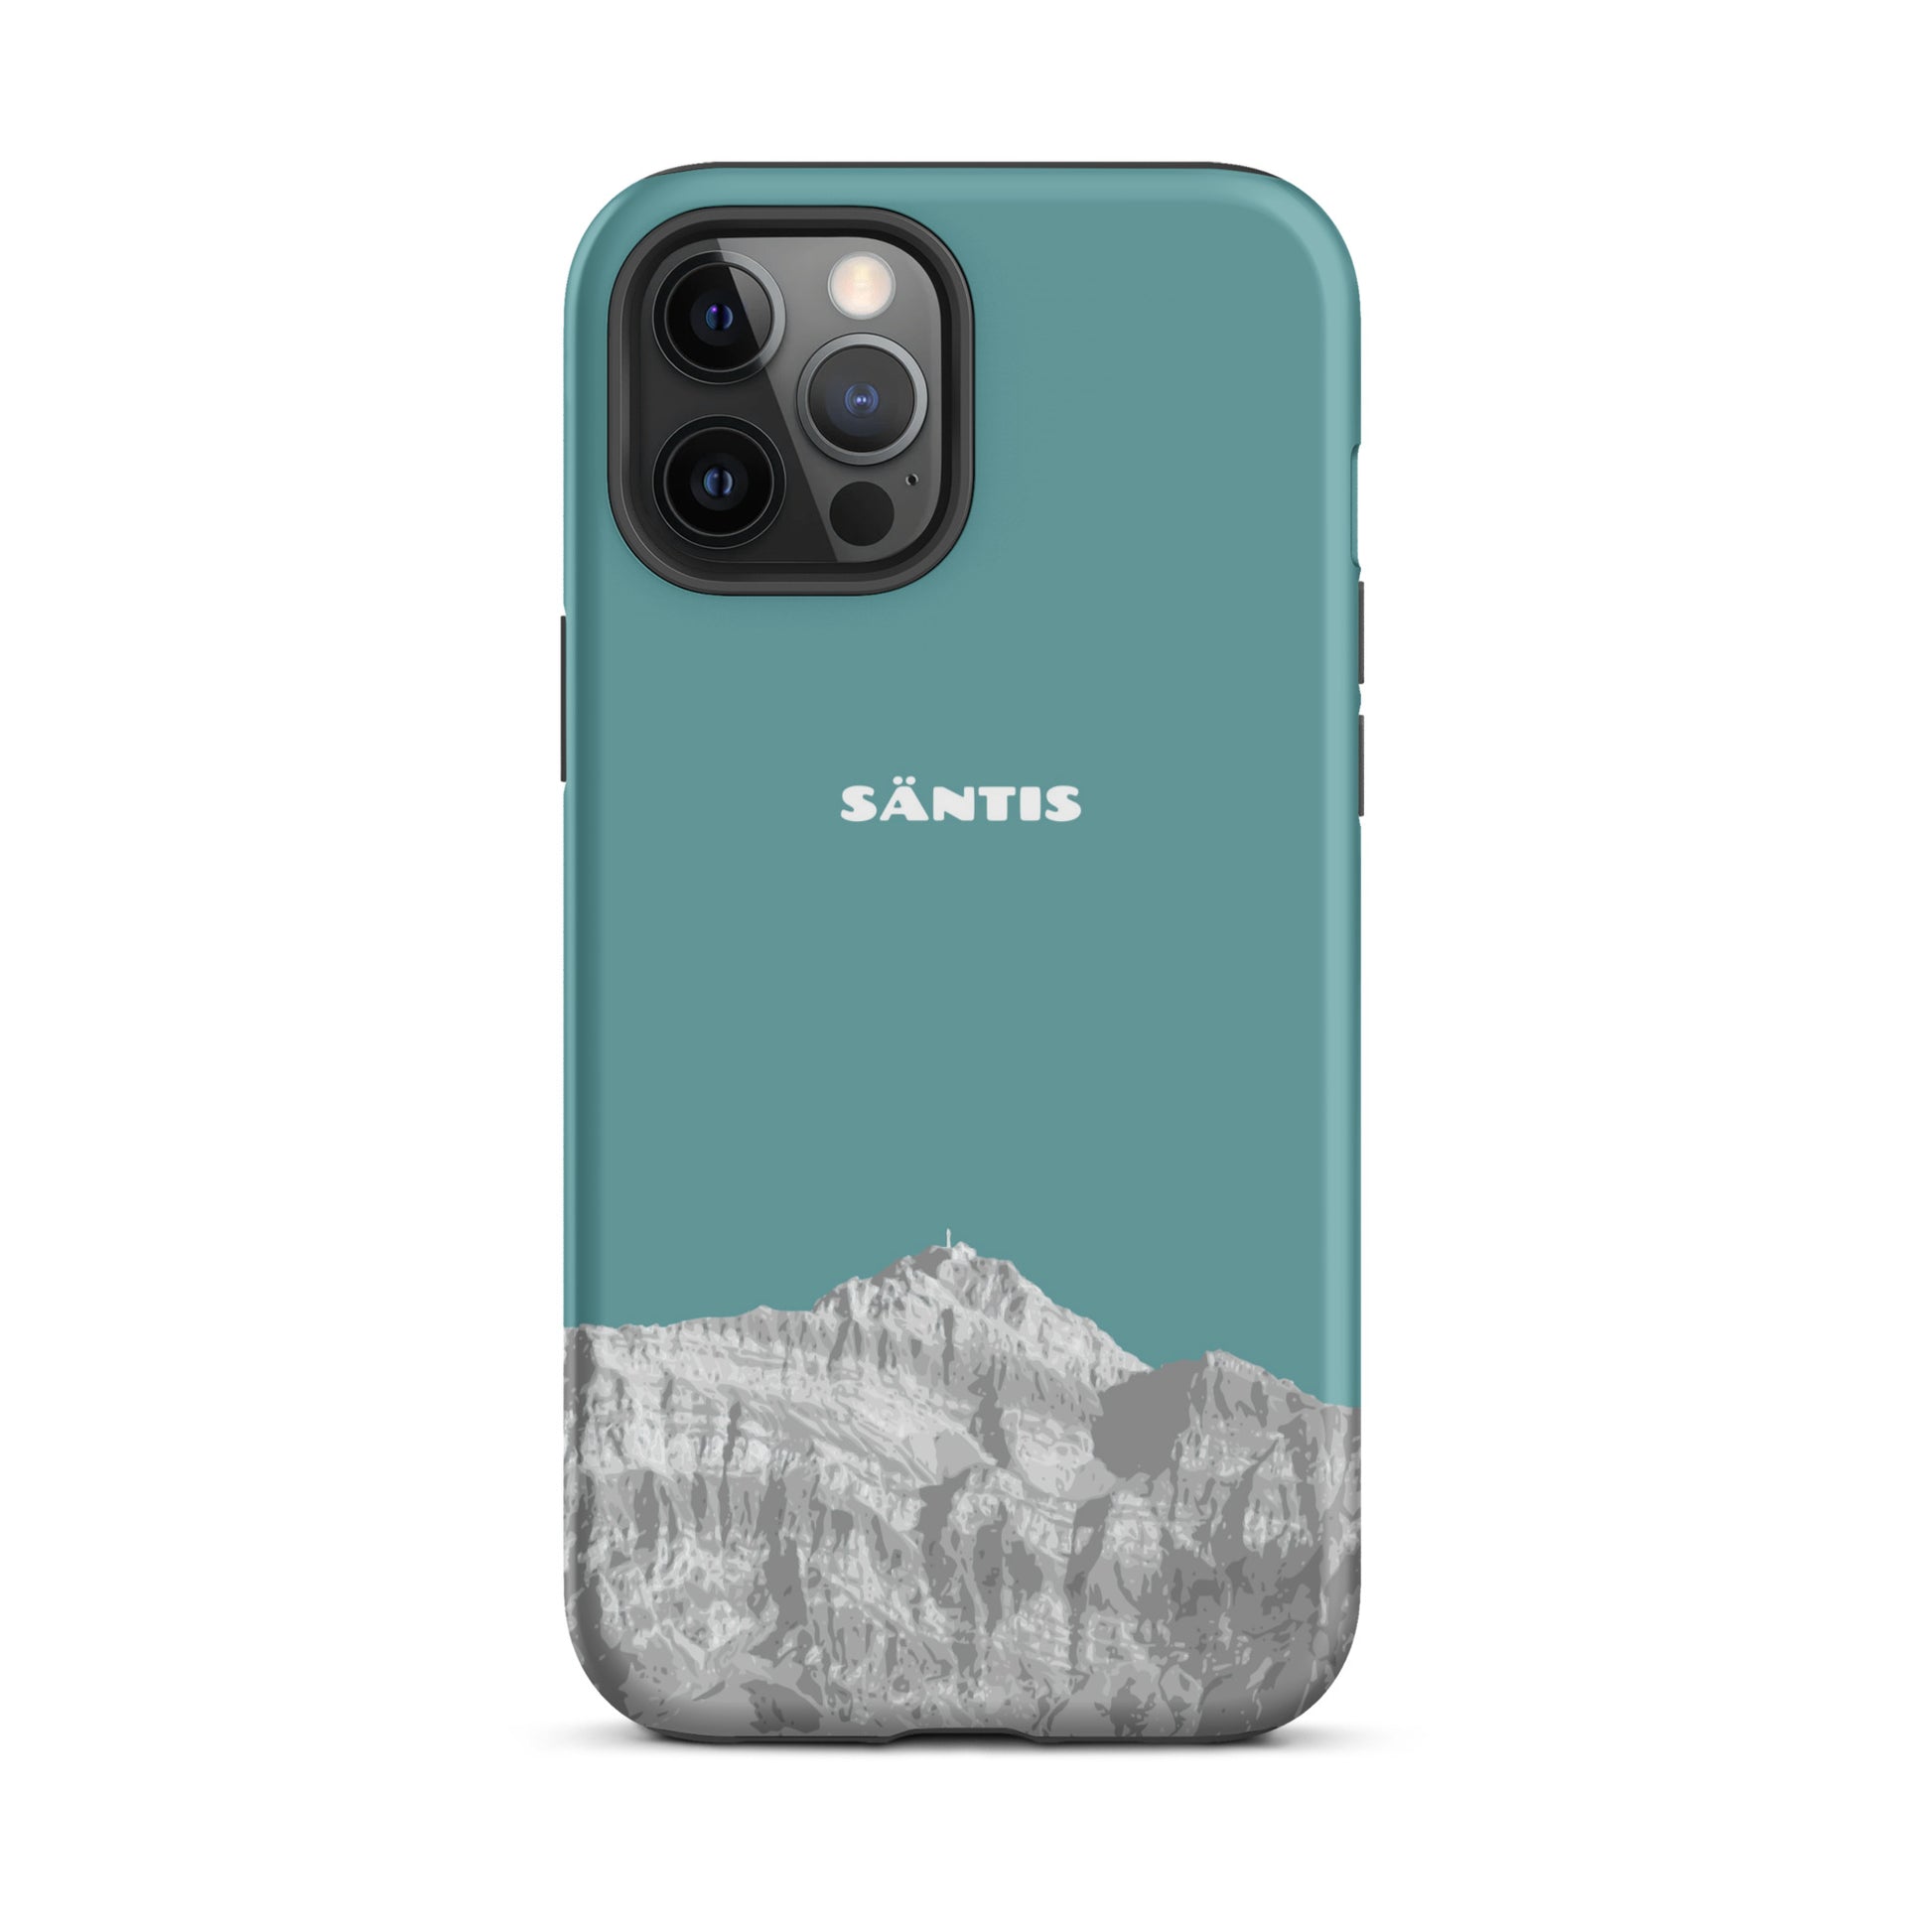 Hülle für das iPhone 12 Pro Max von Apple in der Farbe Kadettenblau, dass den Säntis im Alpstein zeigt.